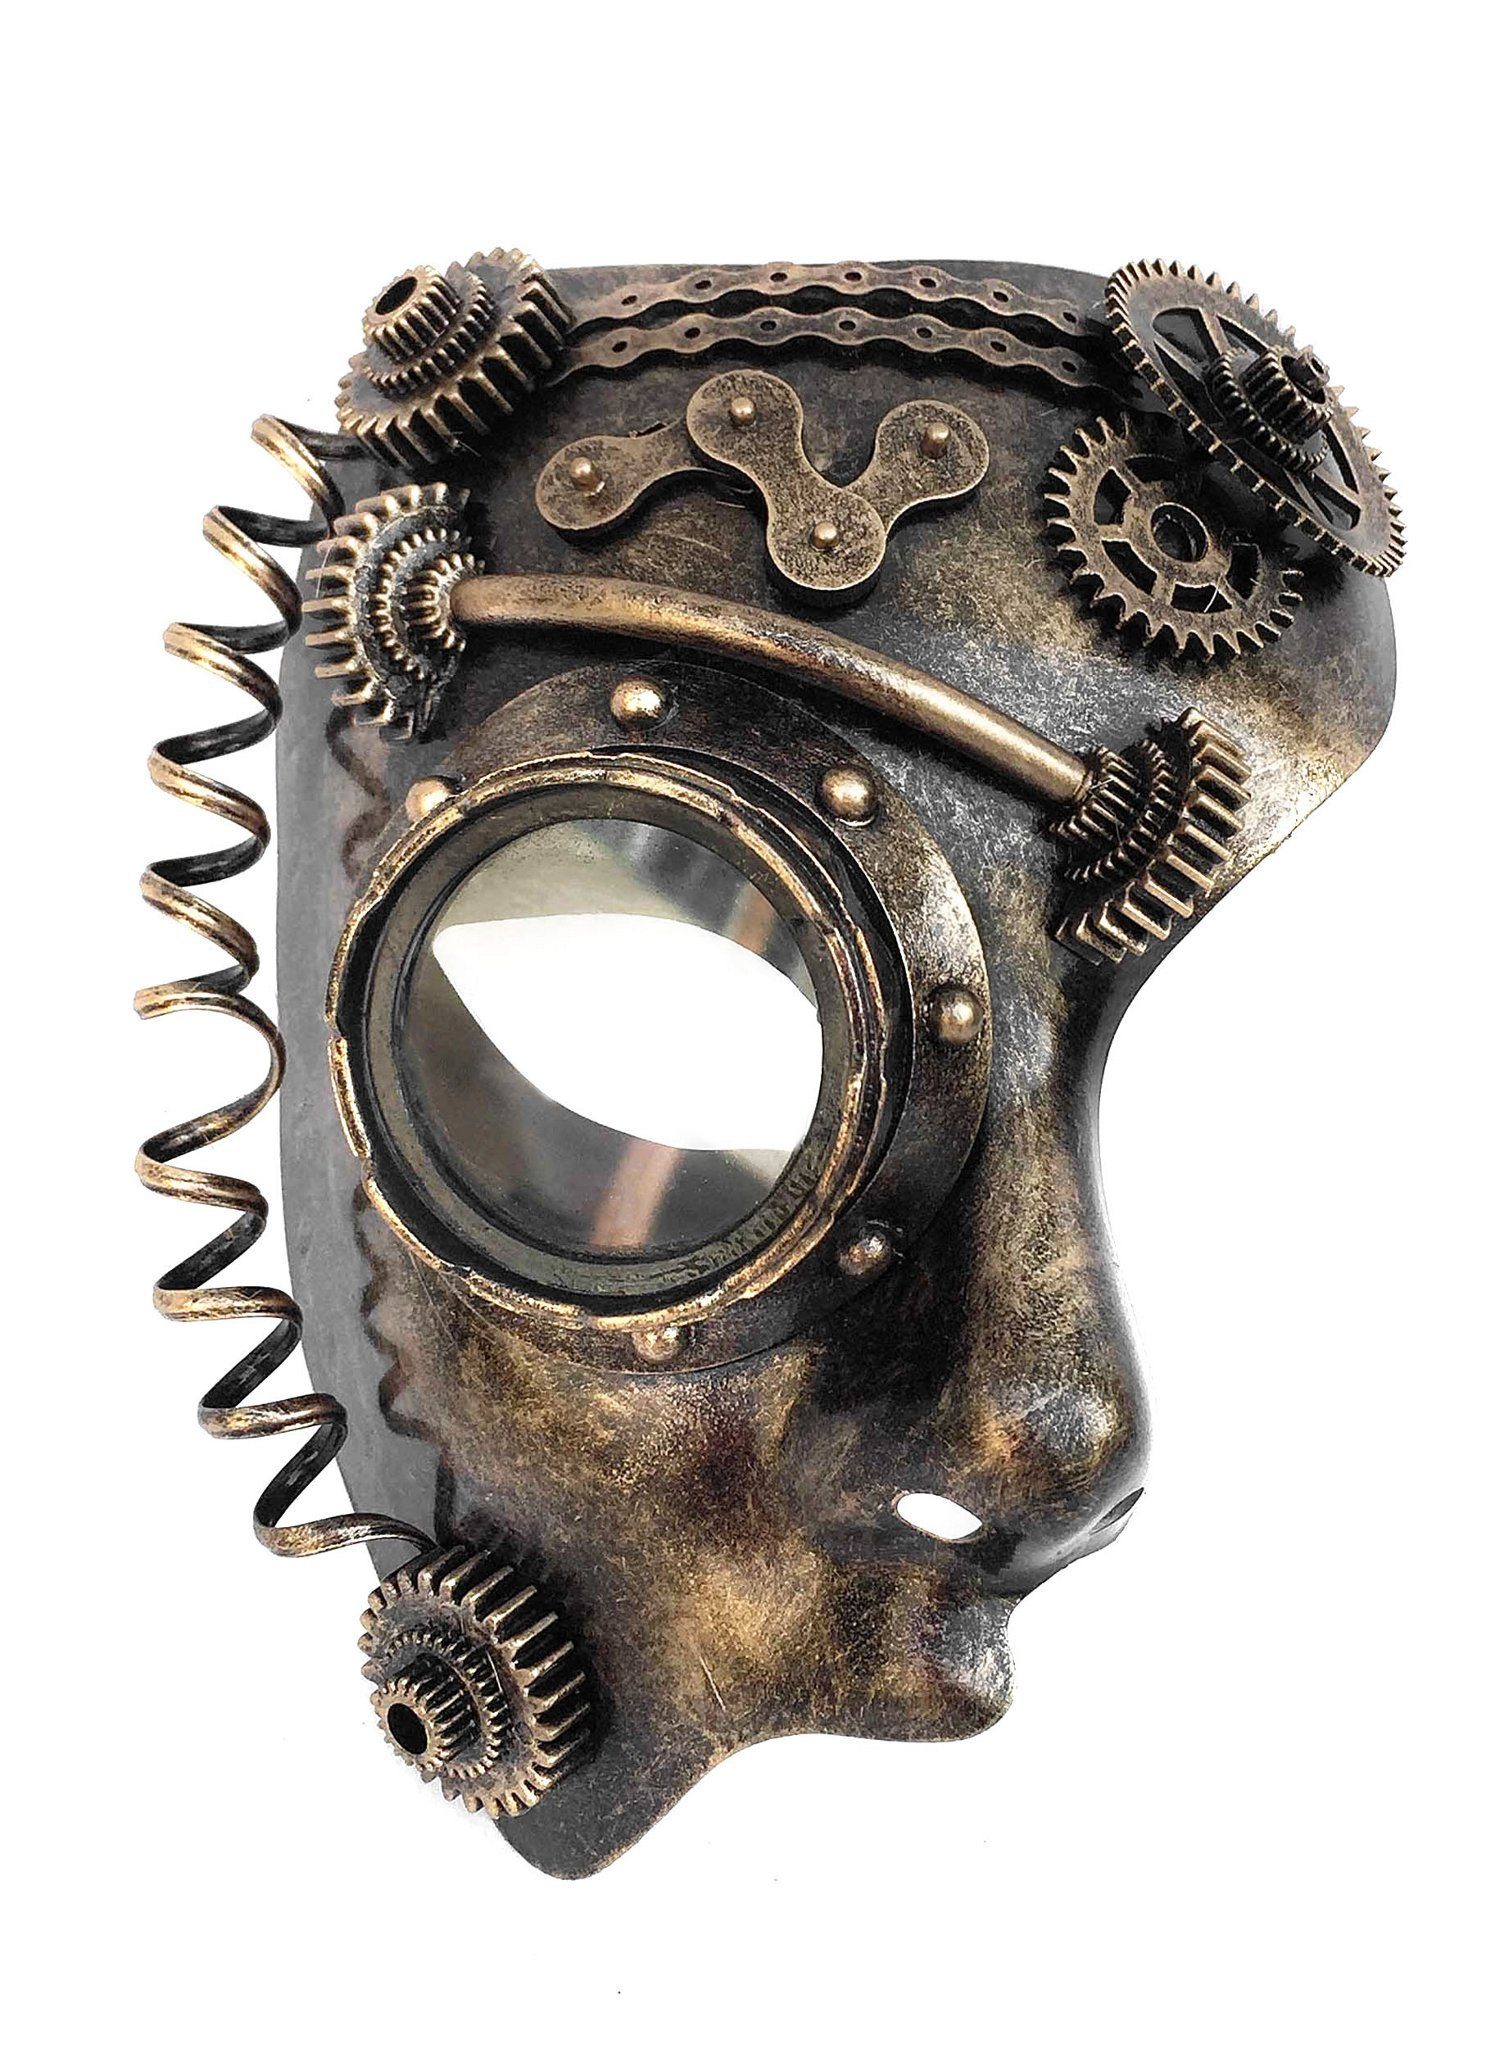 Metamorph Verkleidungsmaske Steampunk Halbmaske Android, Stimmungsvolle Maske für Steampunk, Horror und Sci-Fi